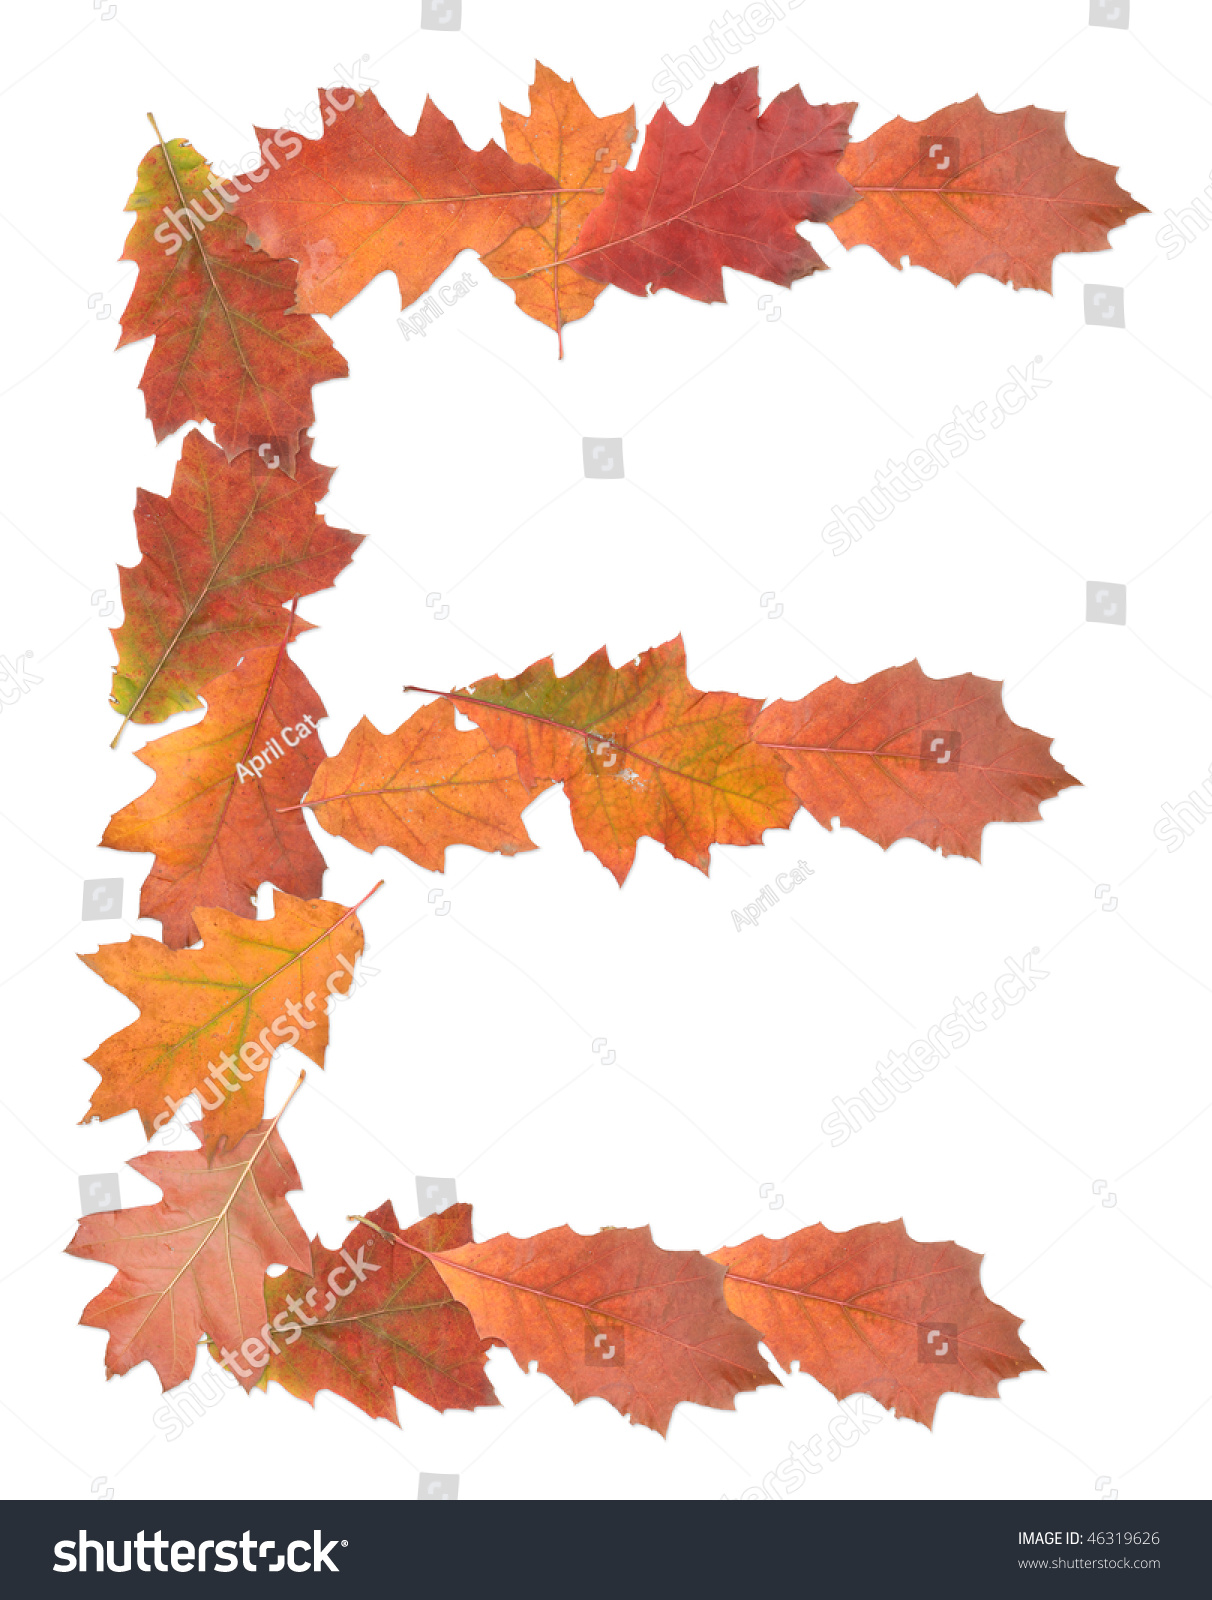 Letter E Made Of Oak Autumn Leaves Stock Photo 46319626 : Shutterstock